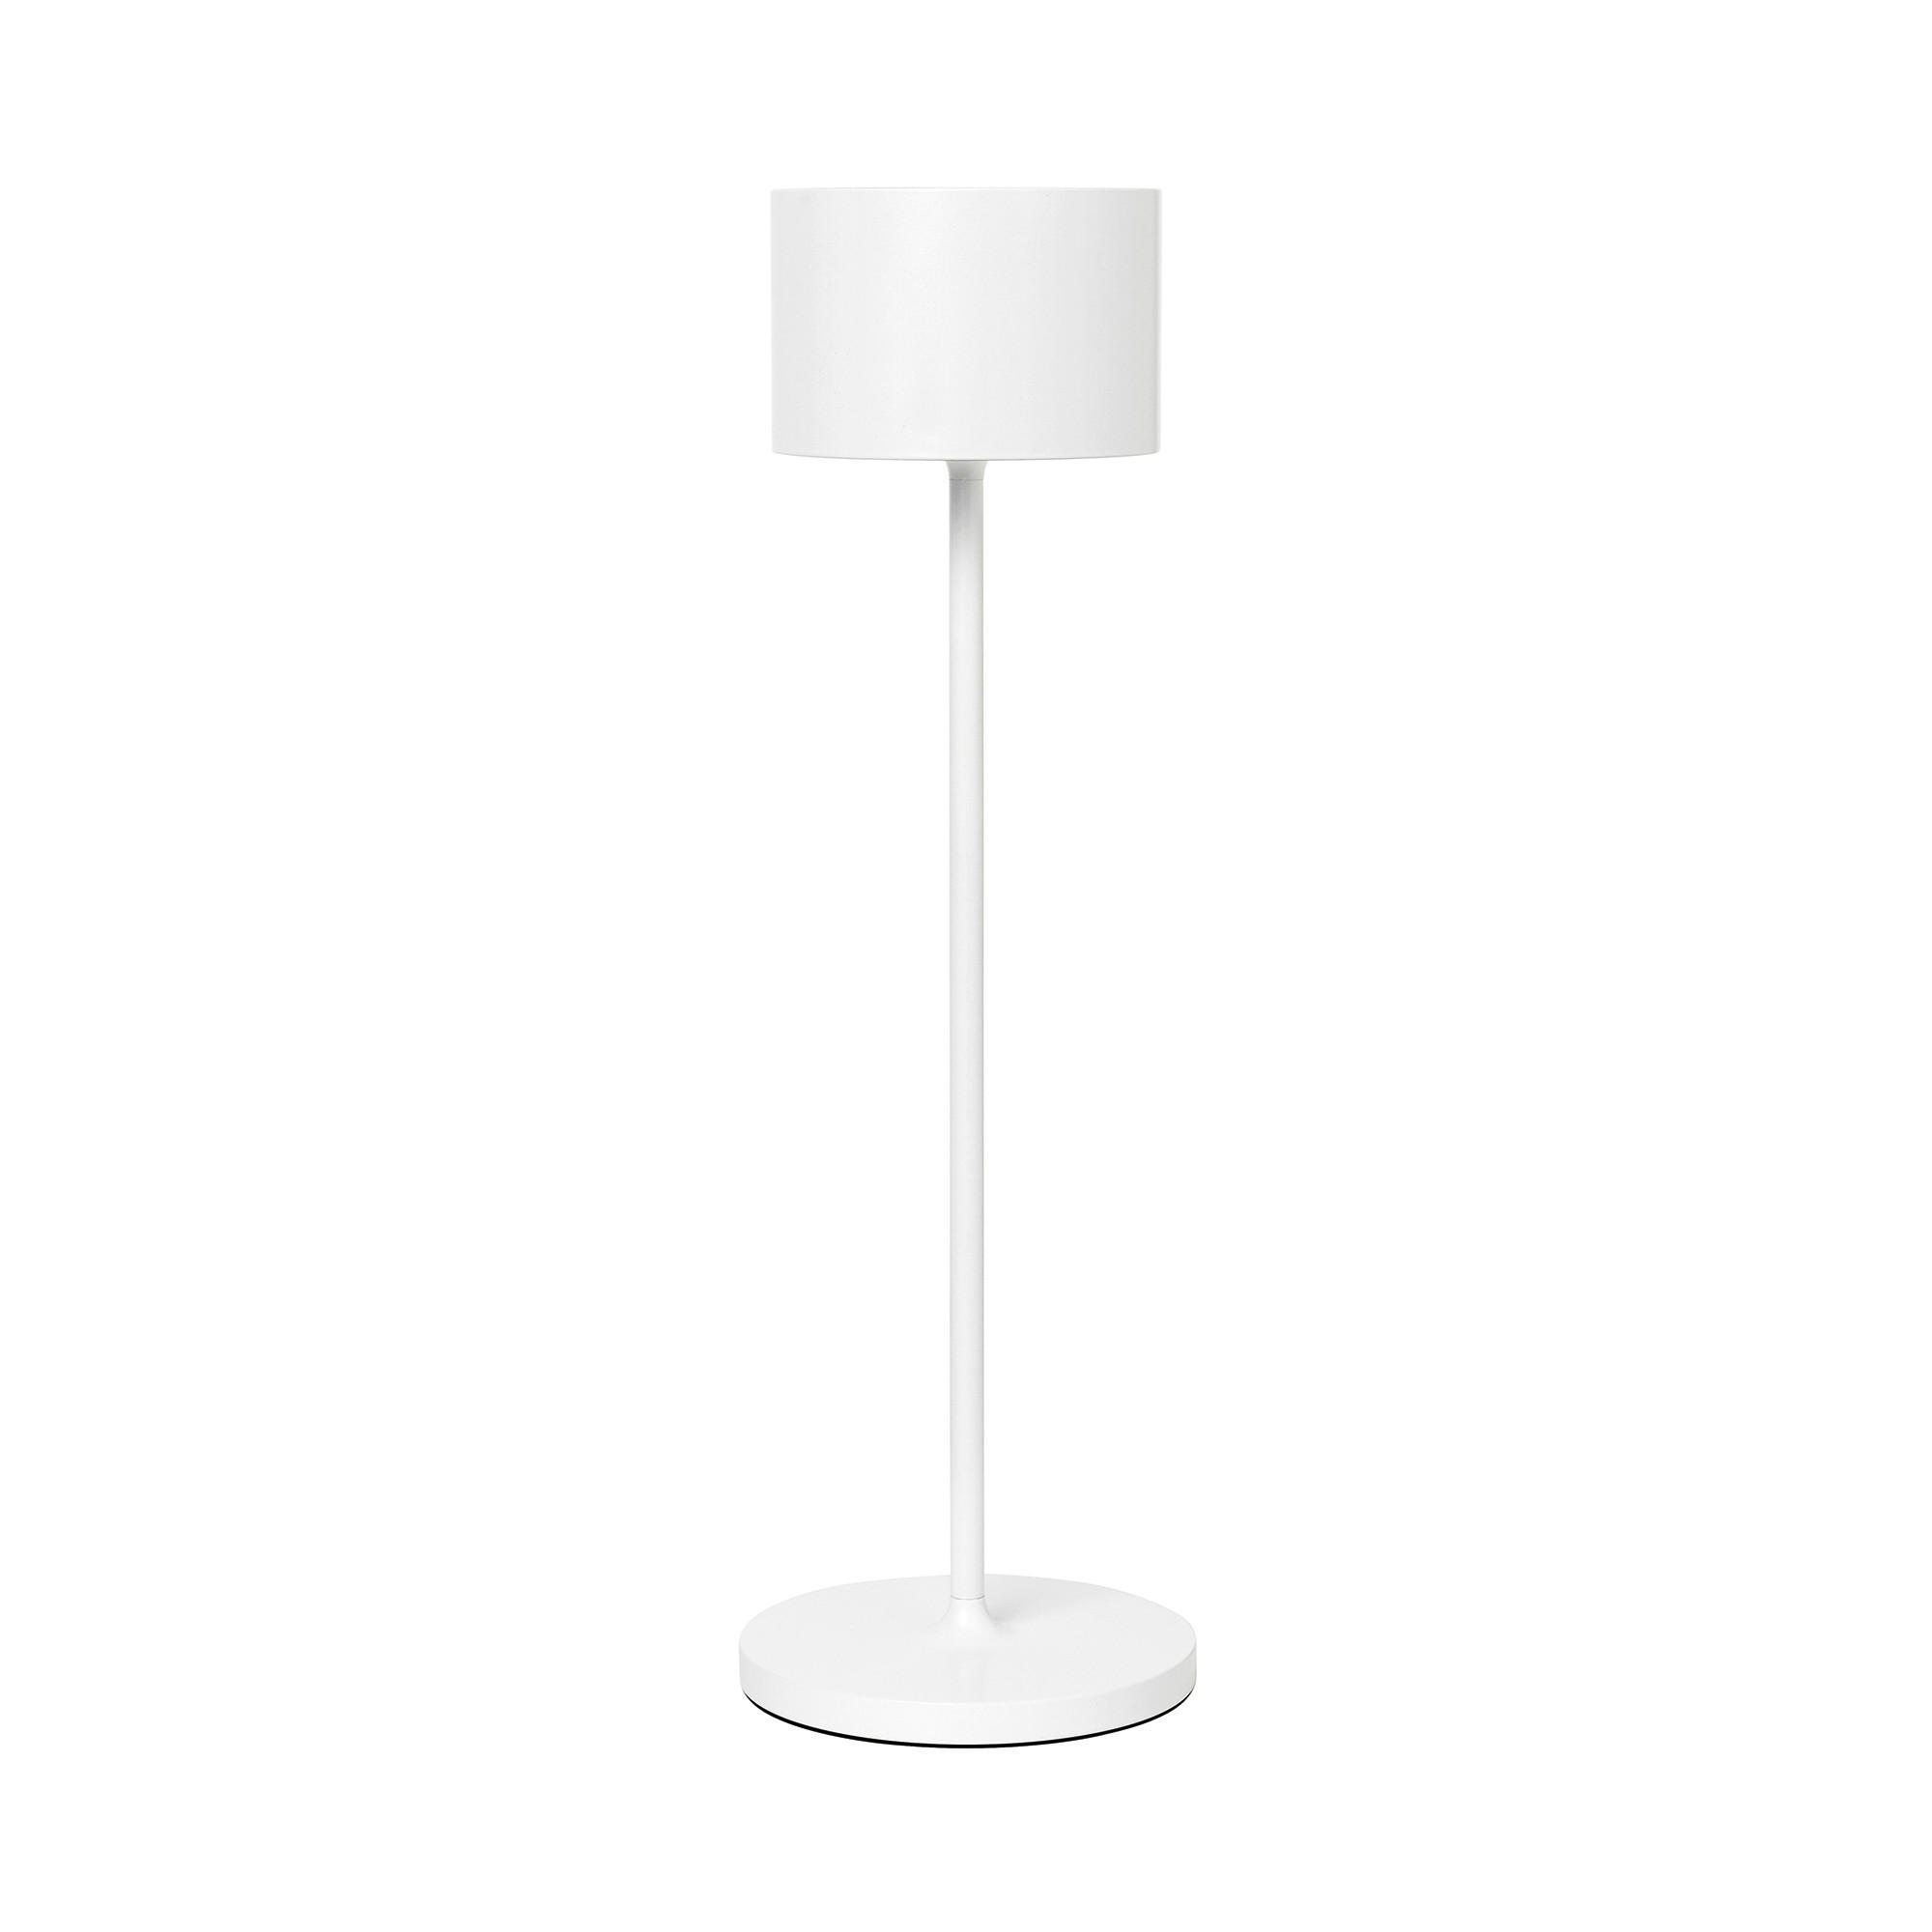 LED-TISCHLEUCHTE - Weiß, Design, Metall (11/33,5cm) - Blomus